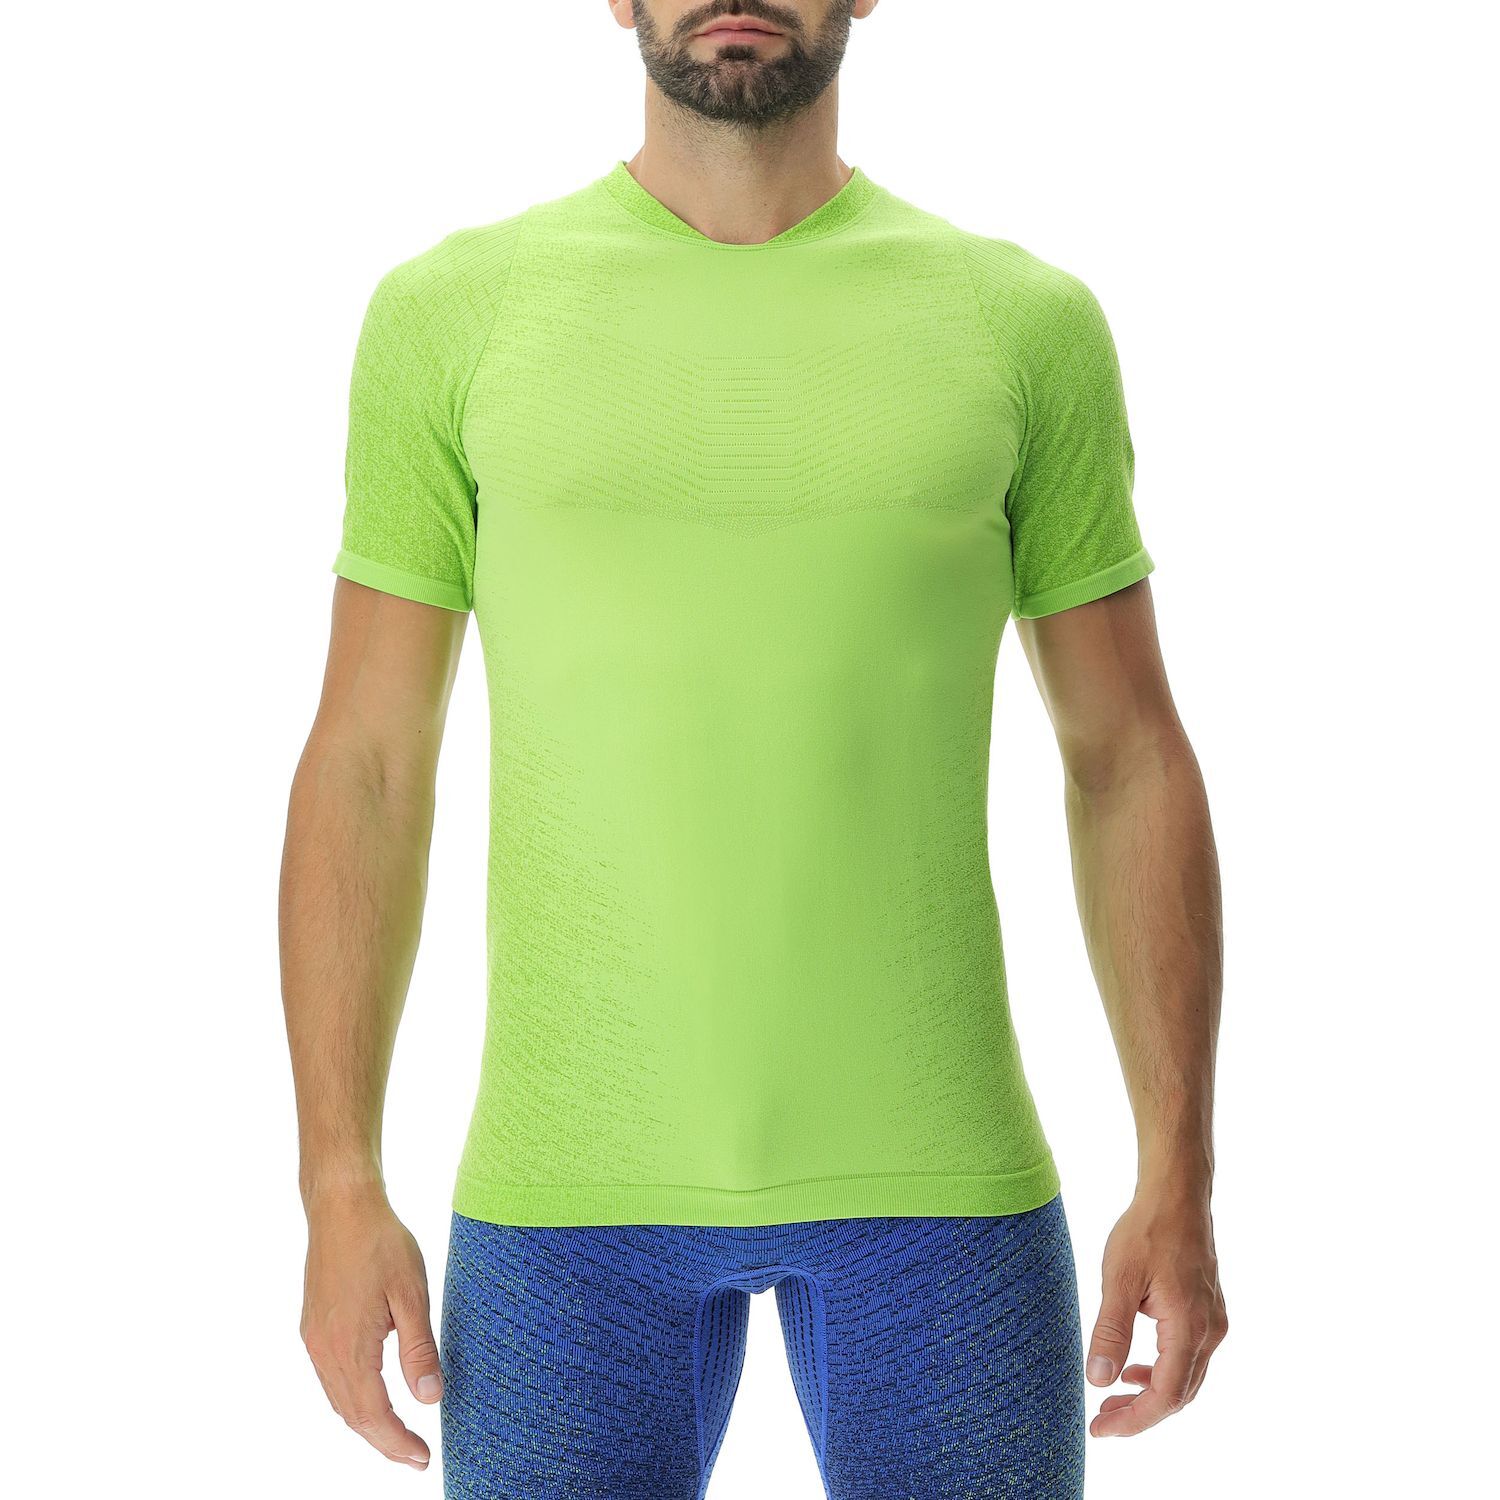 Uyn Running Exceleration Ow Shirt - T-shirt - Men's